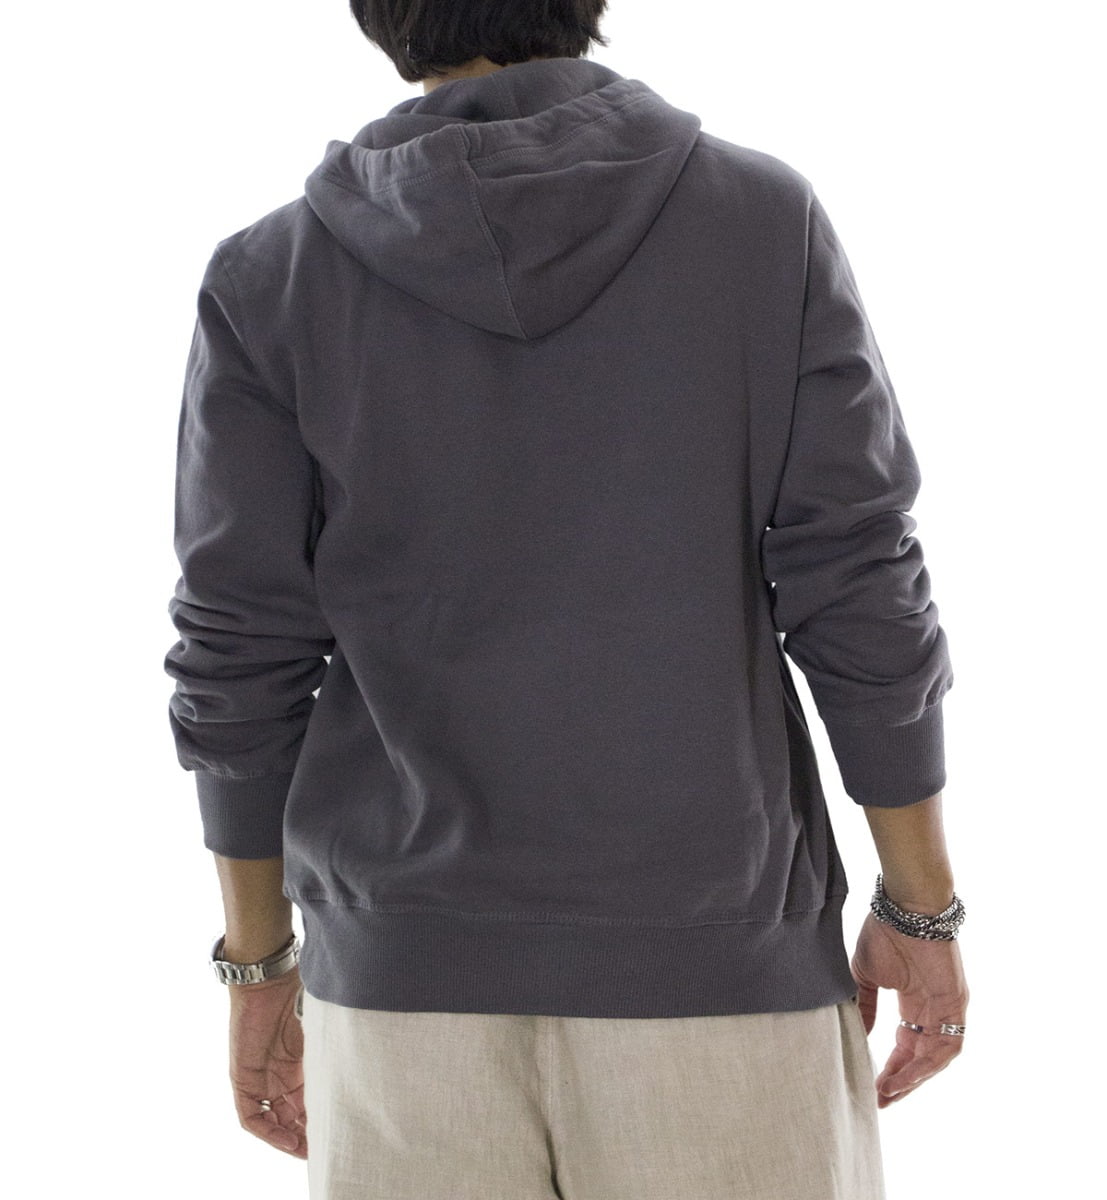 Felpa uomo grigia con cappuccio invernale con elastici ai polsi e fondo elasticizzata con stampa